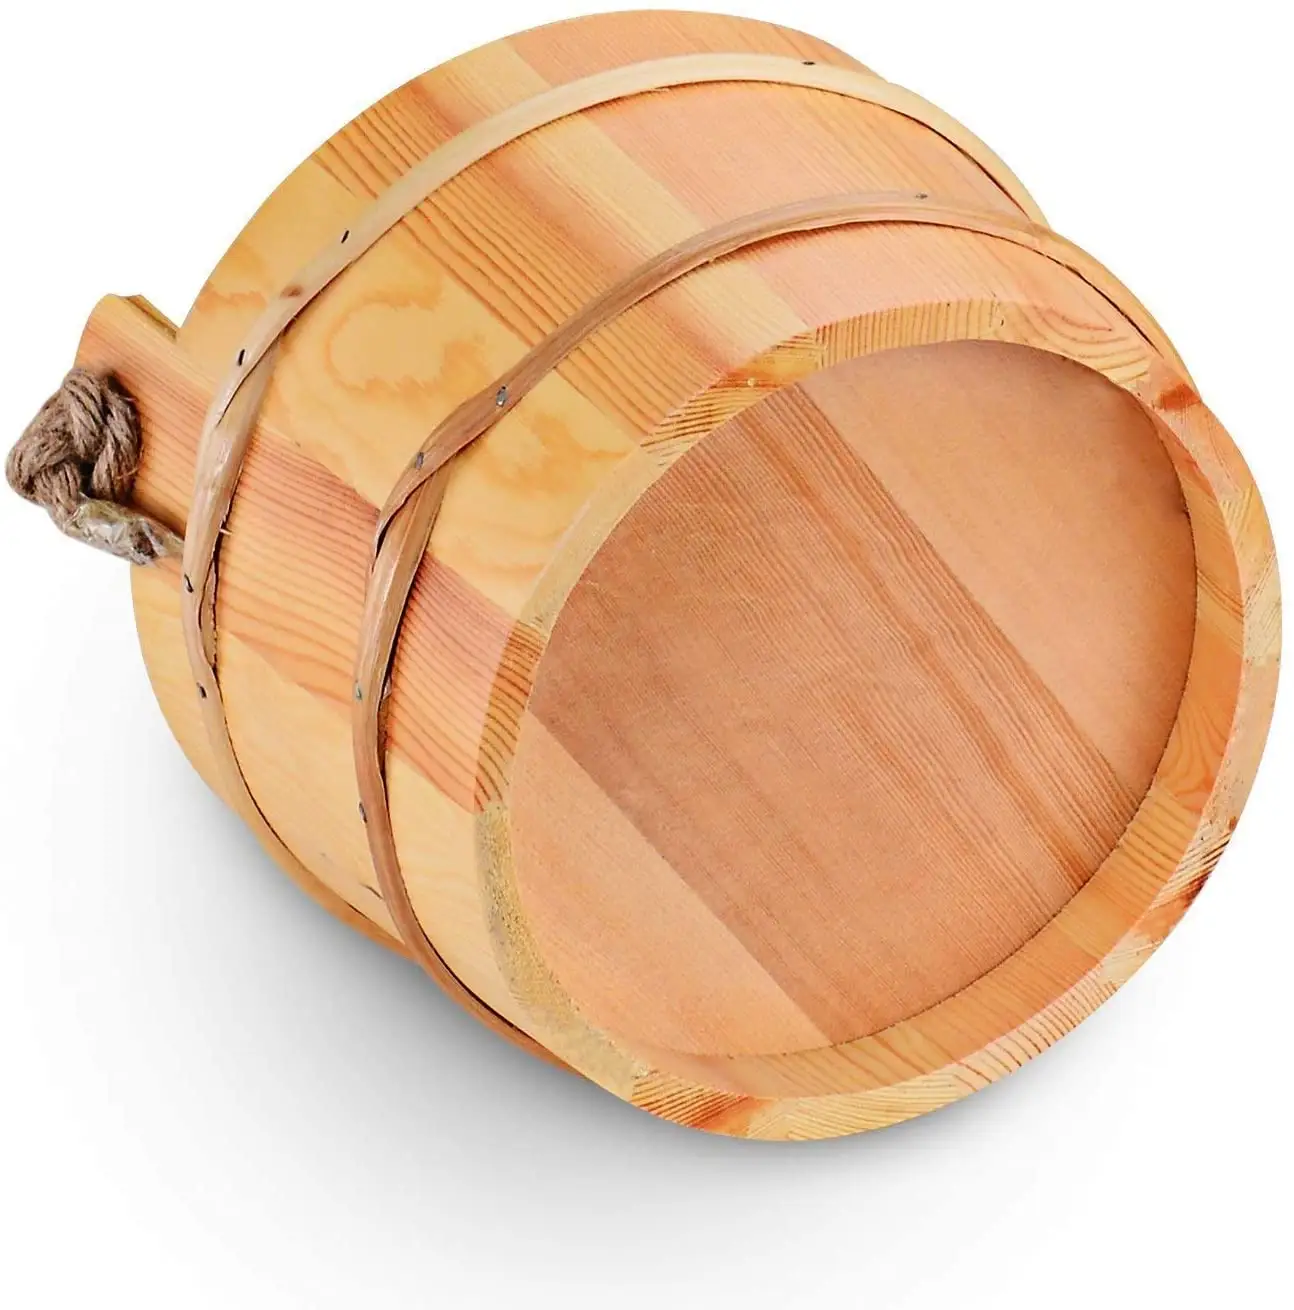 Balde de madeira sauna balde, acessório de spa-5 litros (1.3 galão) sauna com concha feita à mão